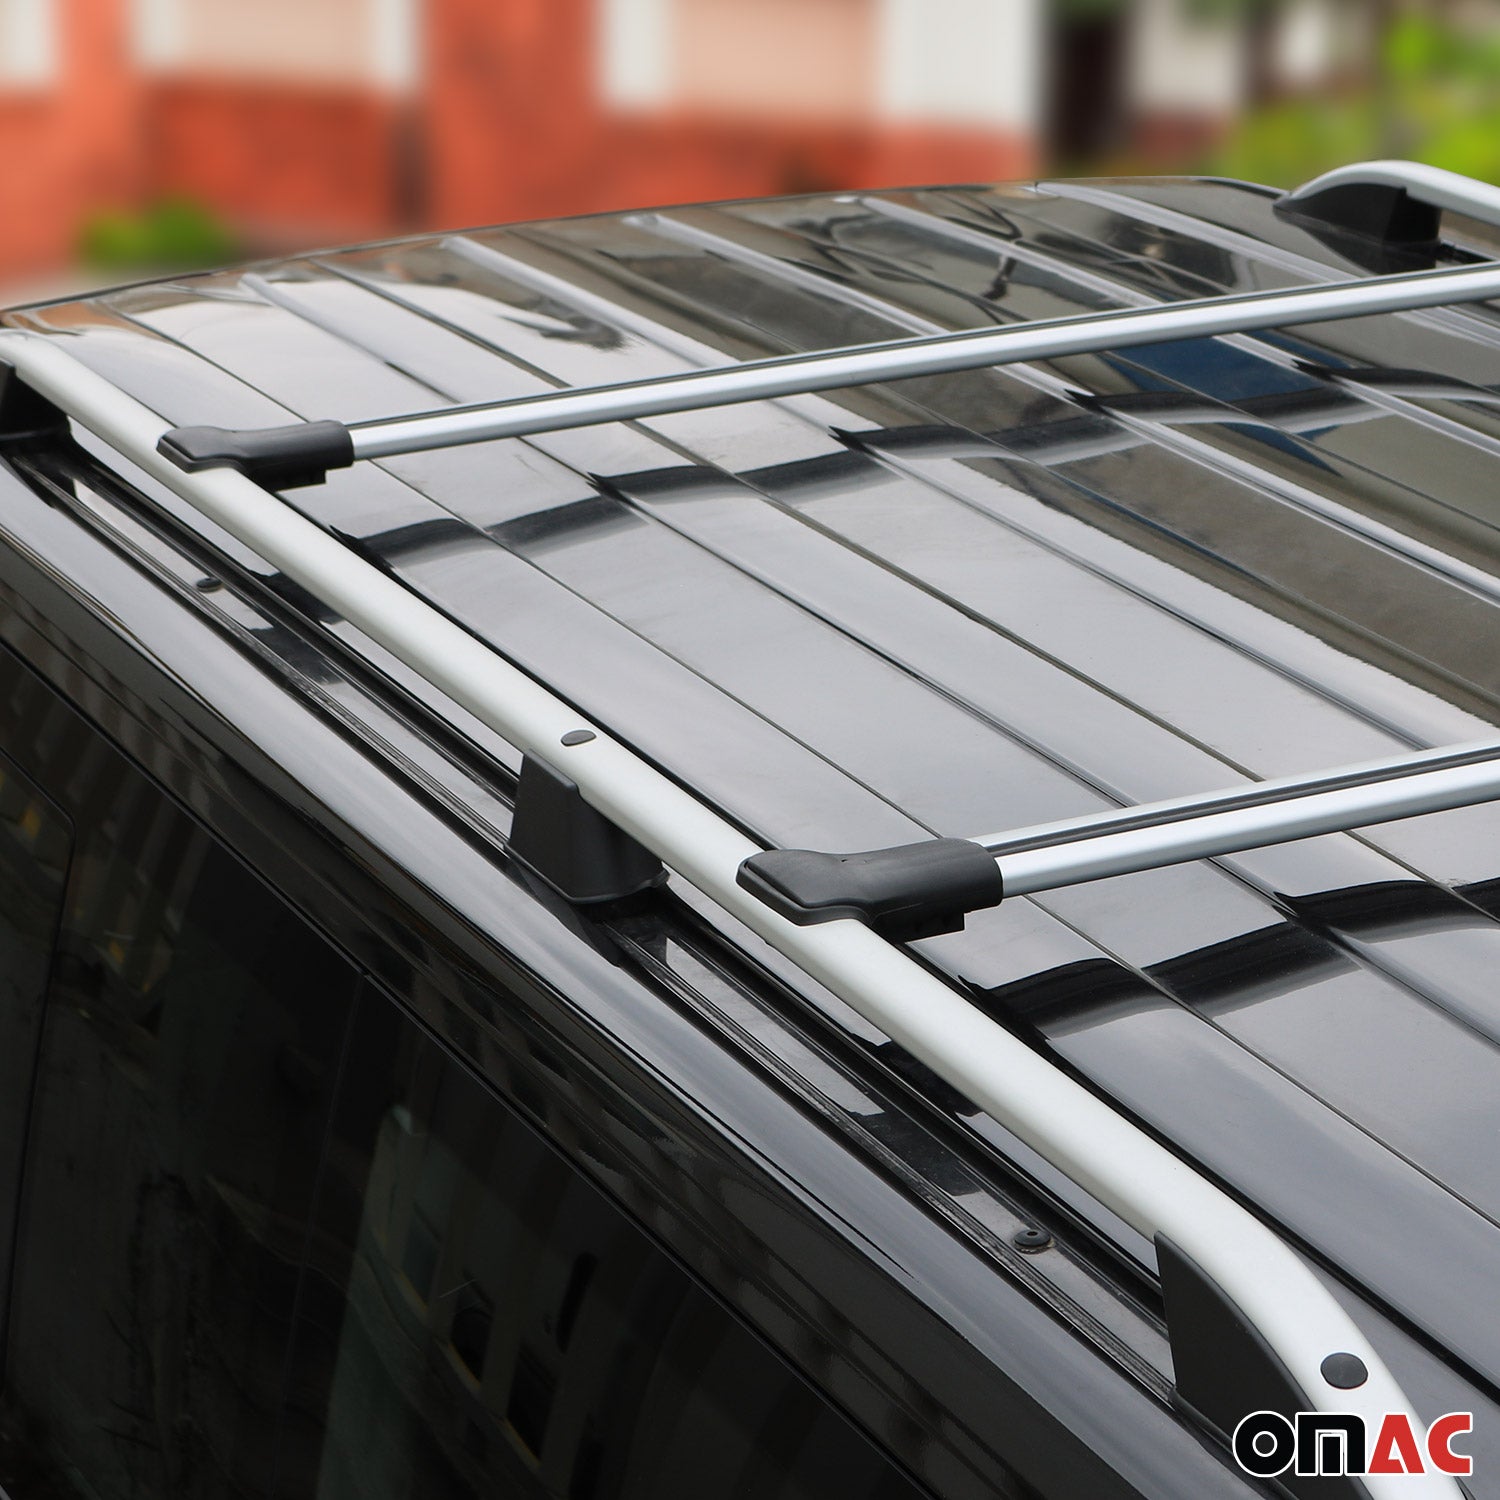 Barres de toit transversales pour VW Touareg 2002-2010 Aluminium Gris